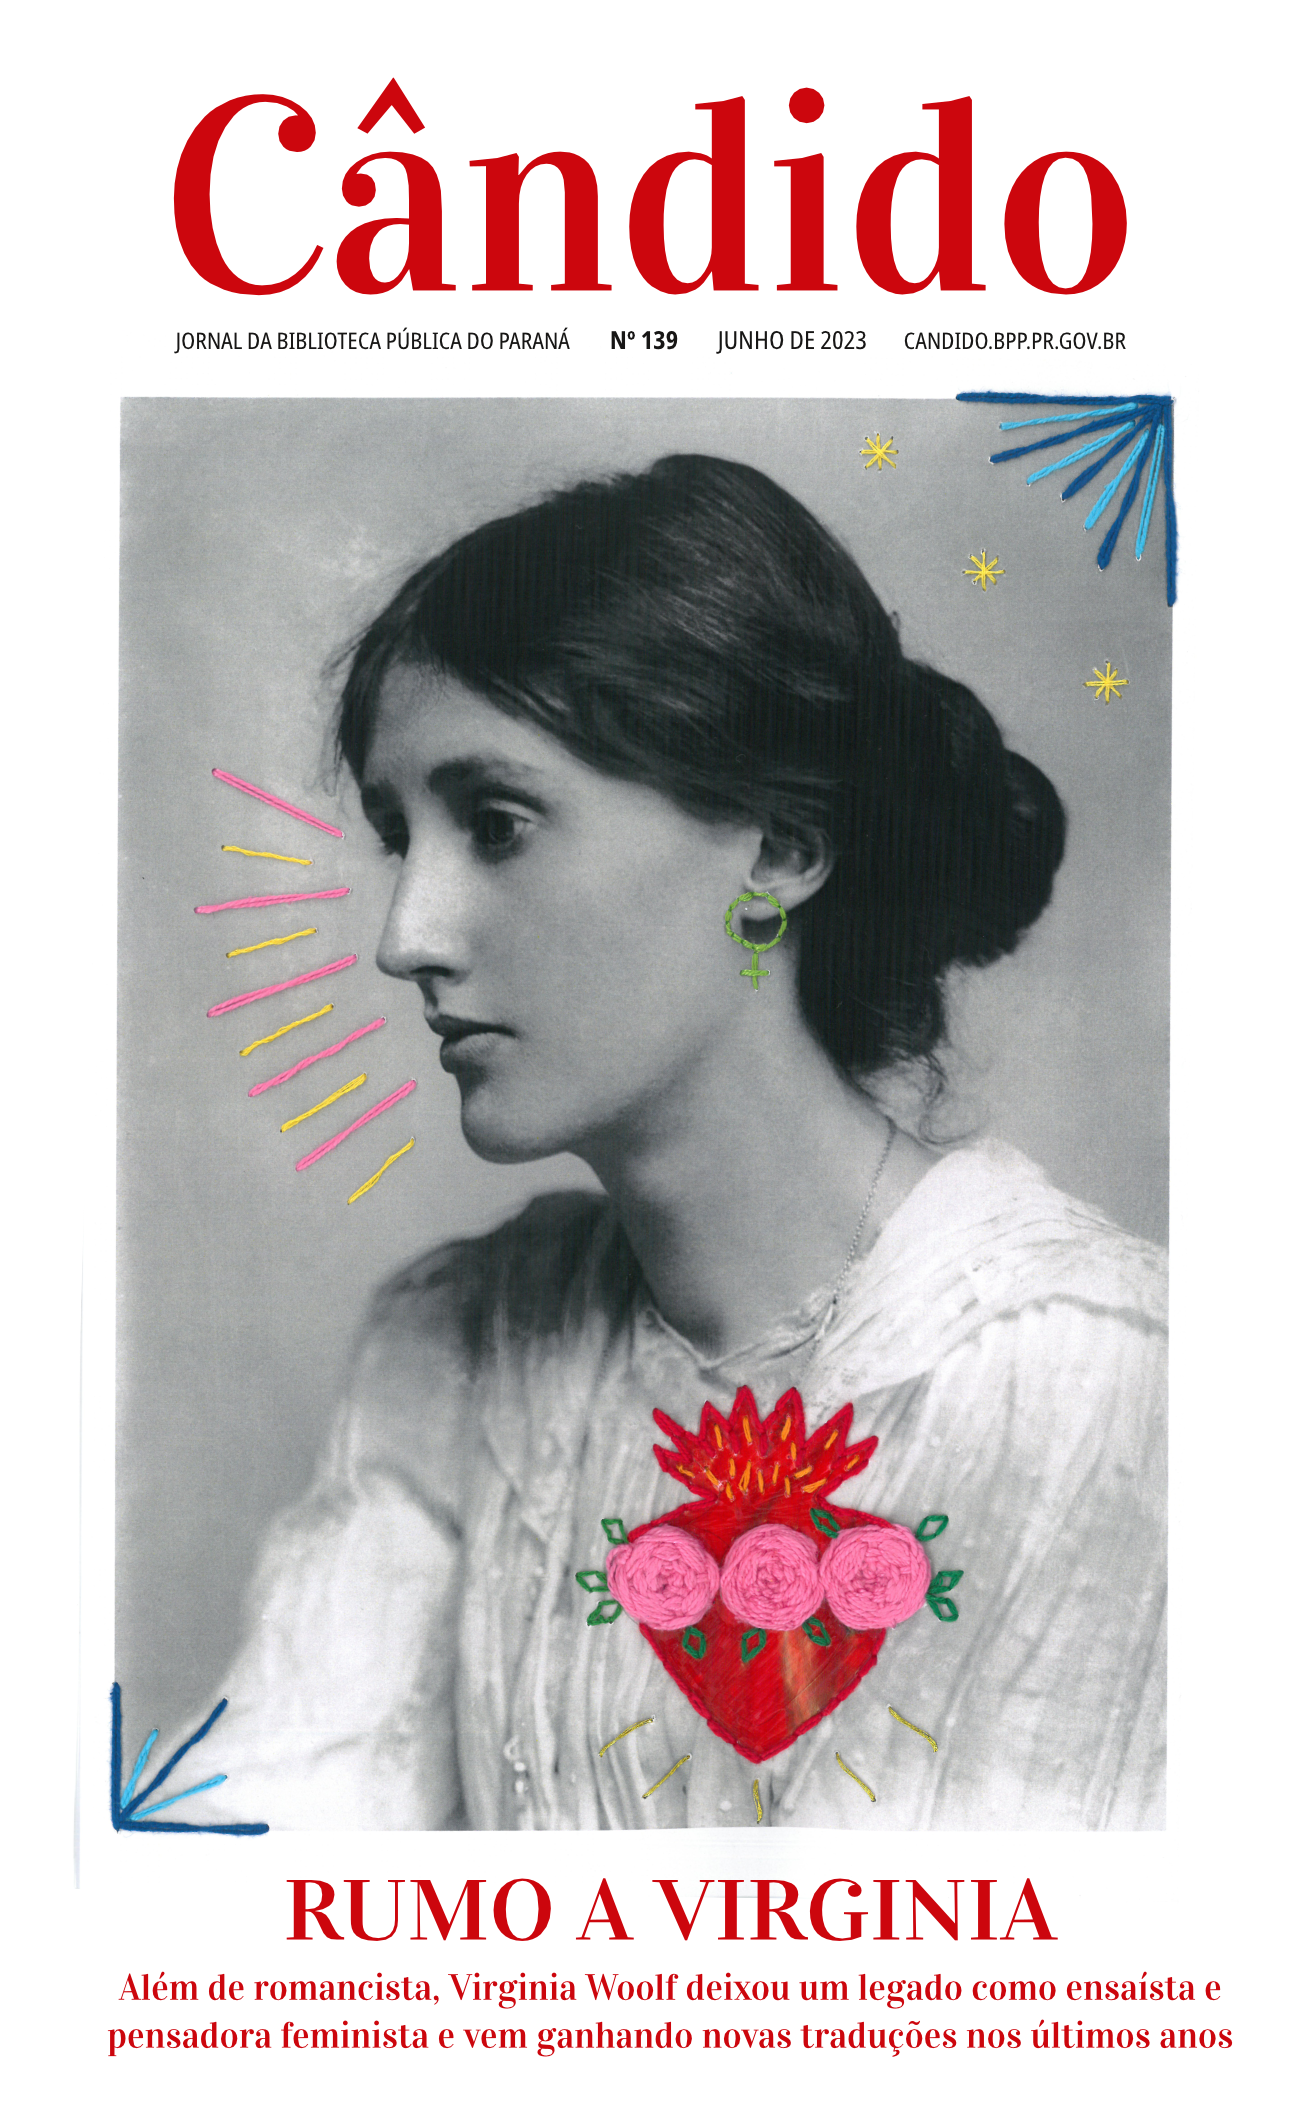 Virginia Woolf: Historia y Legado